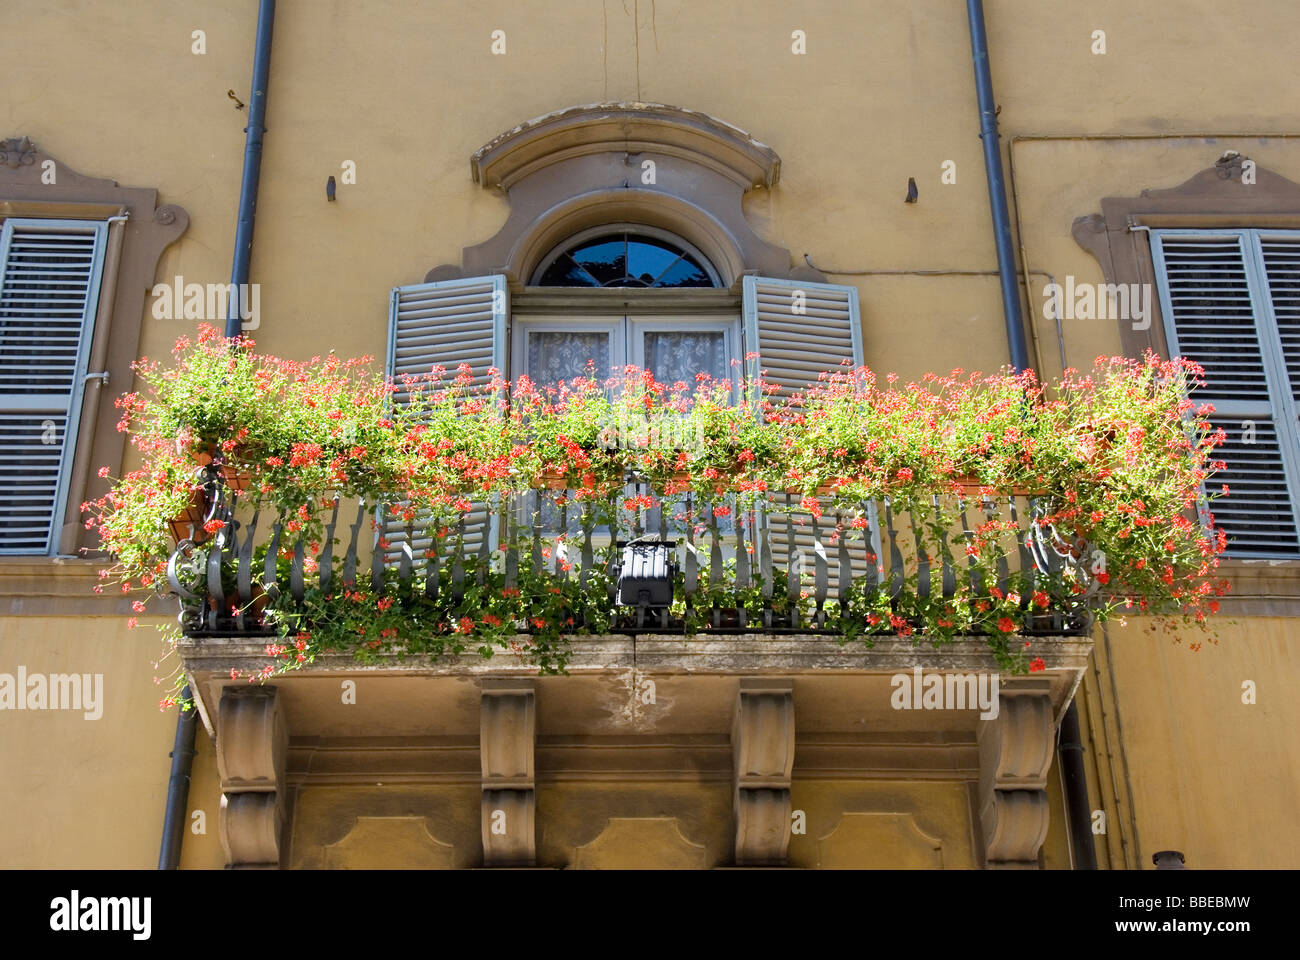 Un balcon avec des jardinières en terre cuite de géraniums rouge Banque D'Images